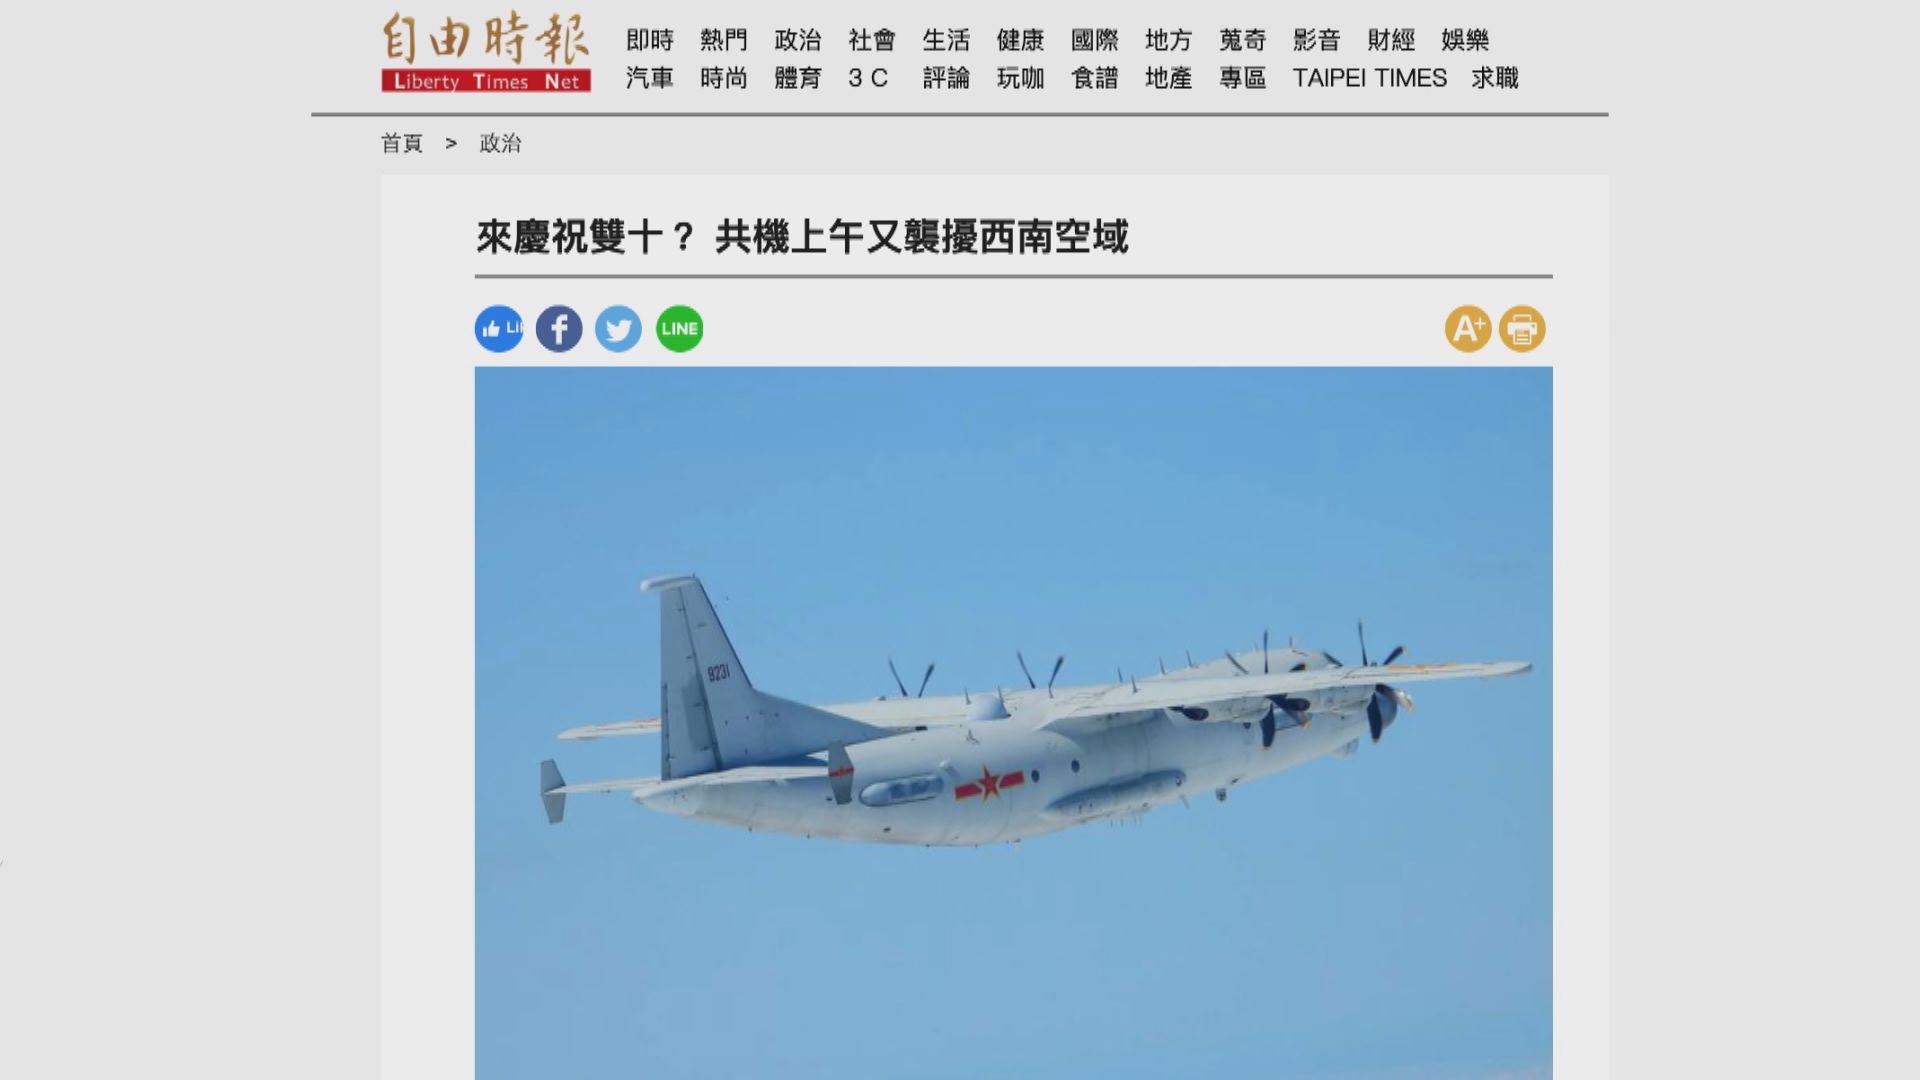 報道指解放軍軍機早上再進入台灣空域